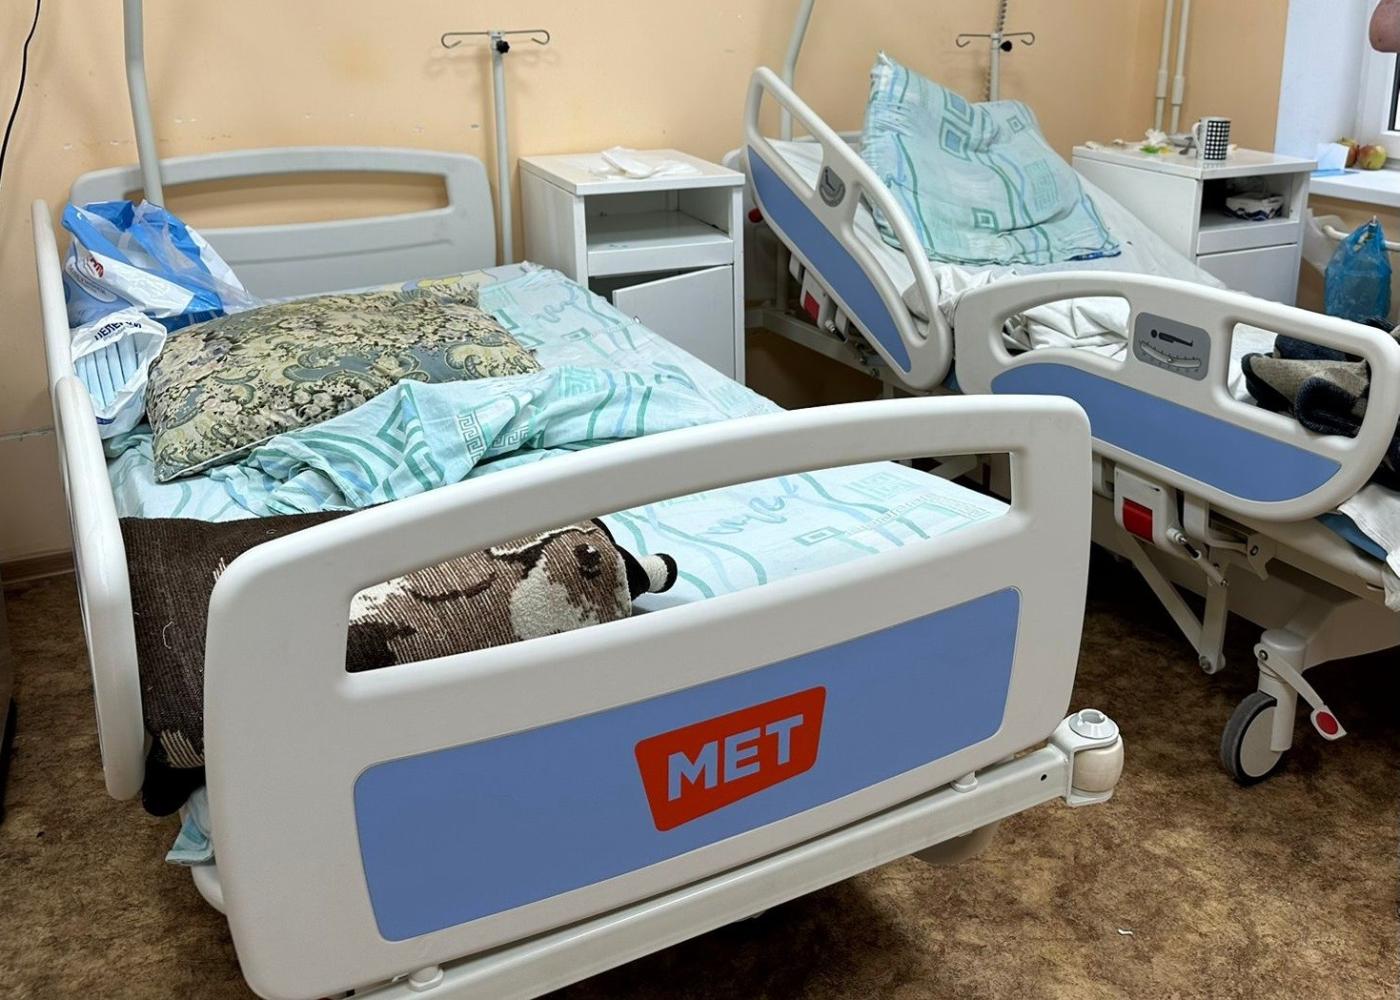 Стационар Светловской больницы получил многофункциональные реанимационные кровати